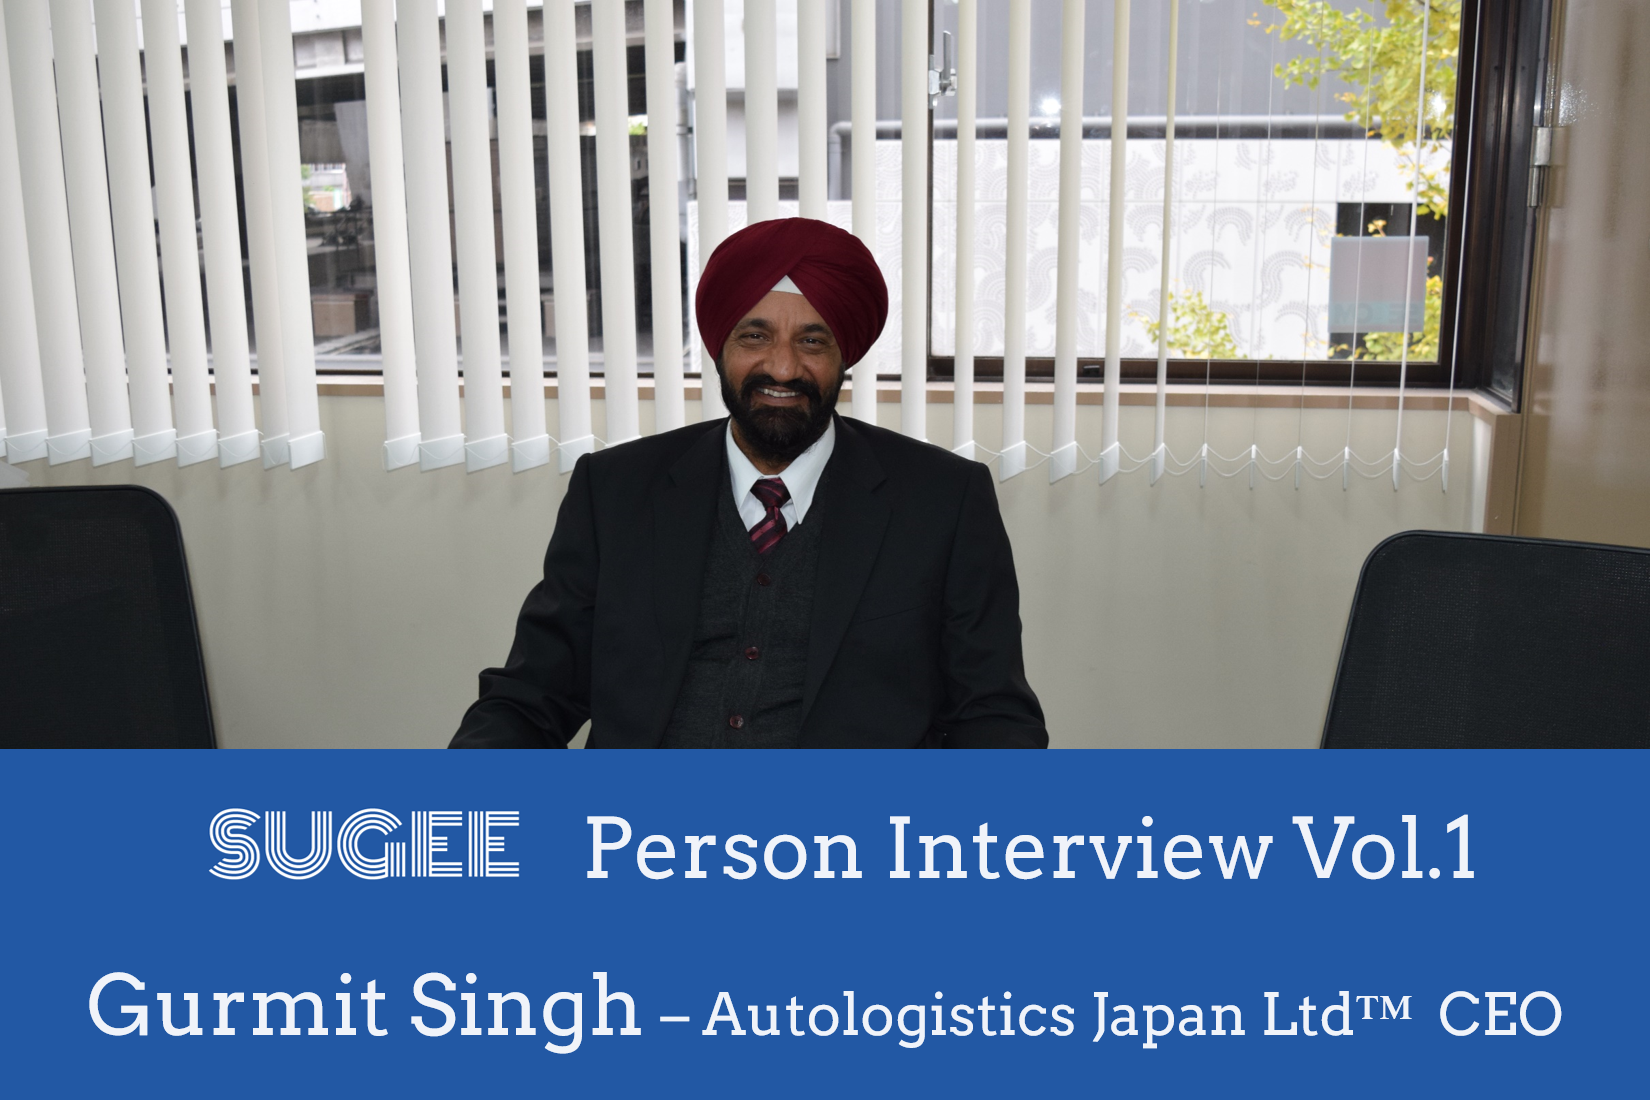 SUGEE person interview Vol.1 -Autologistics Japan Ltd™ CEO Gurmit Singh